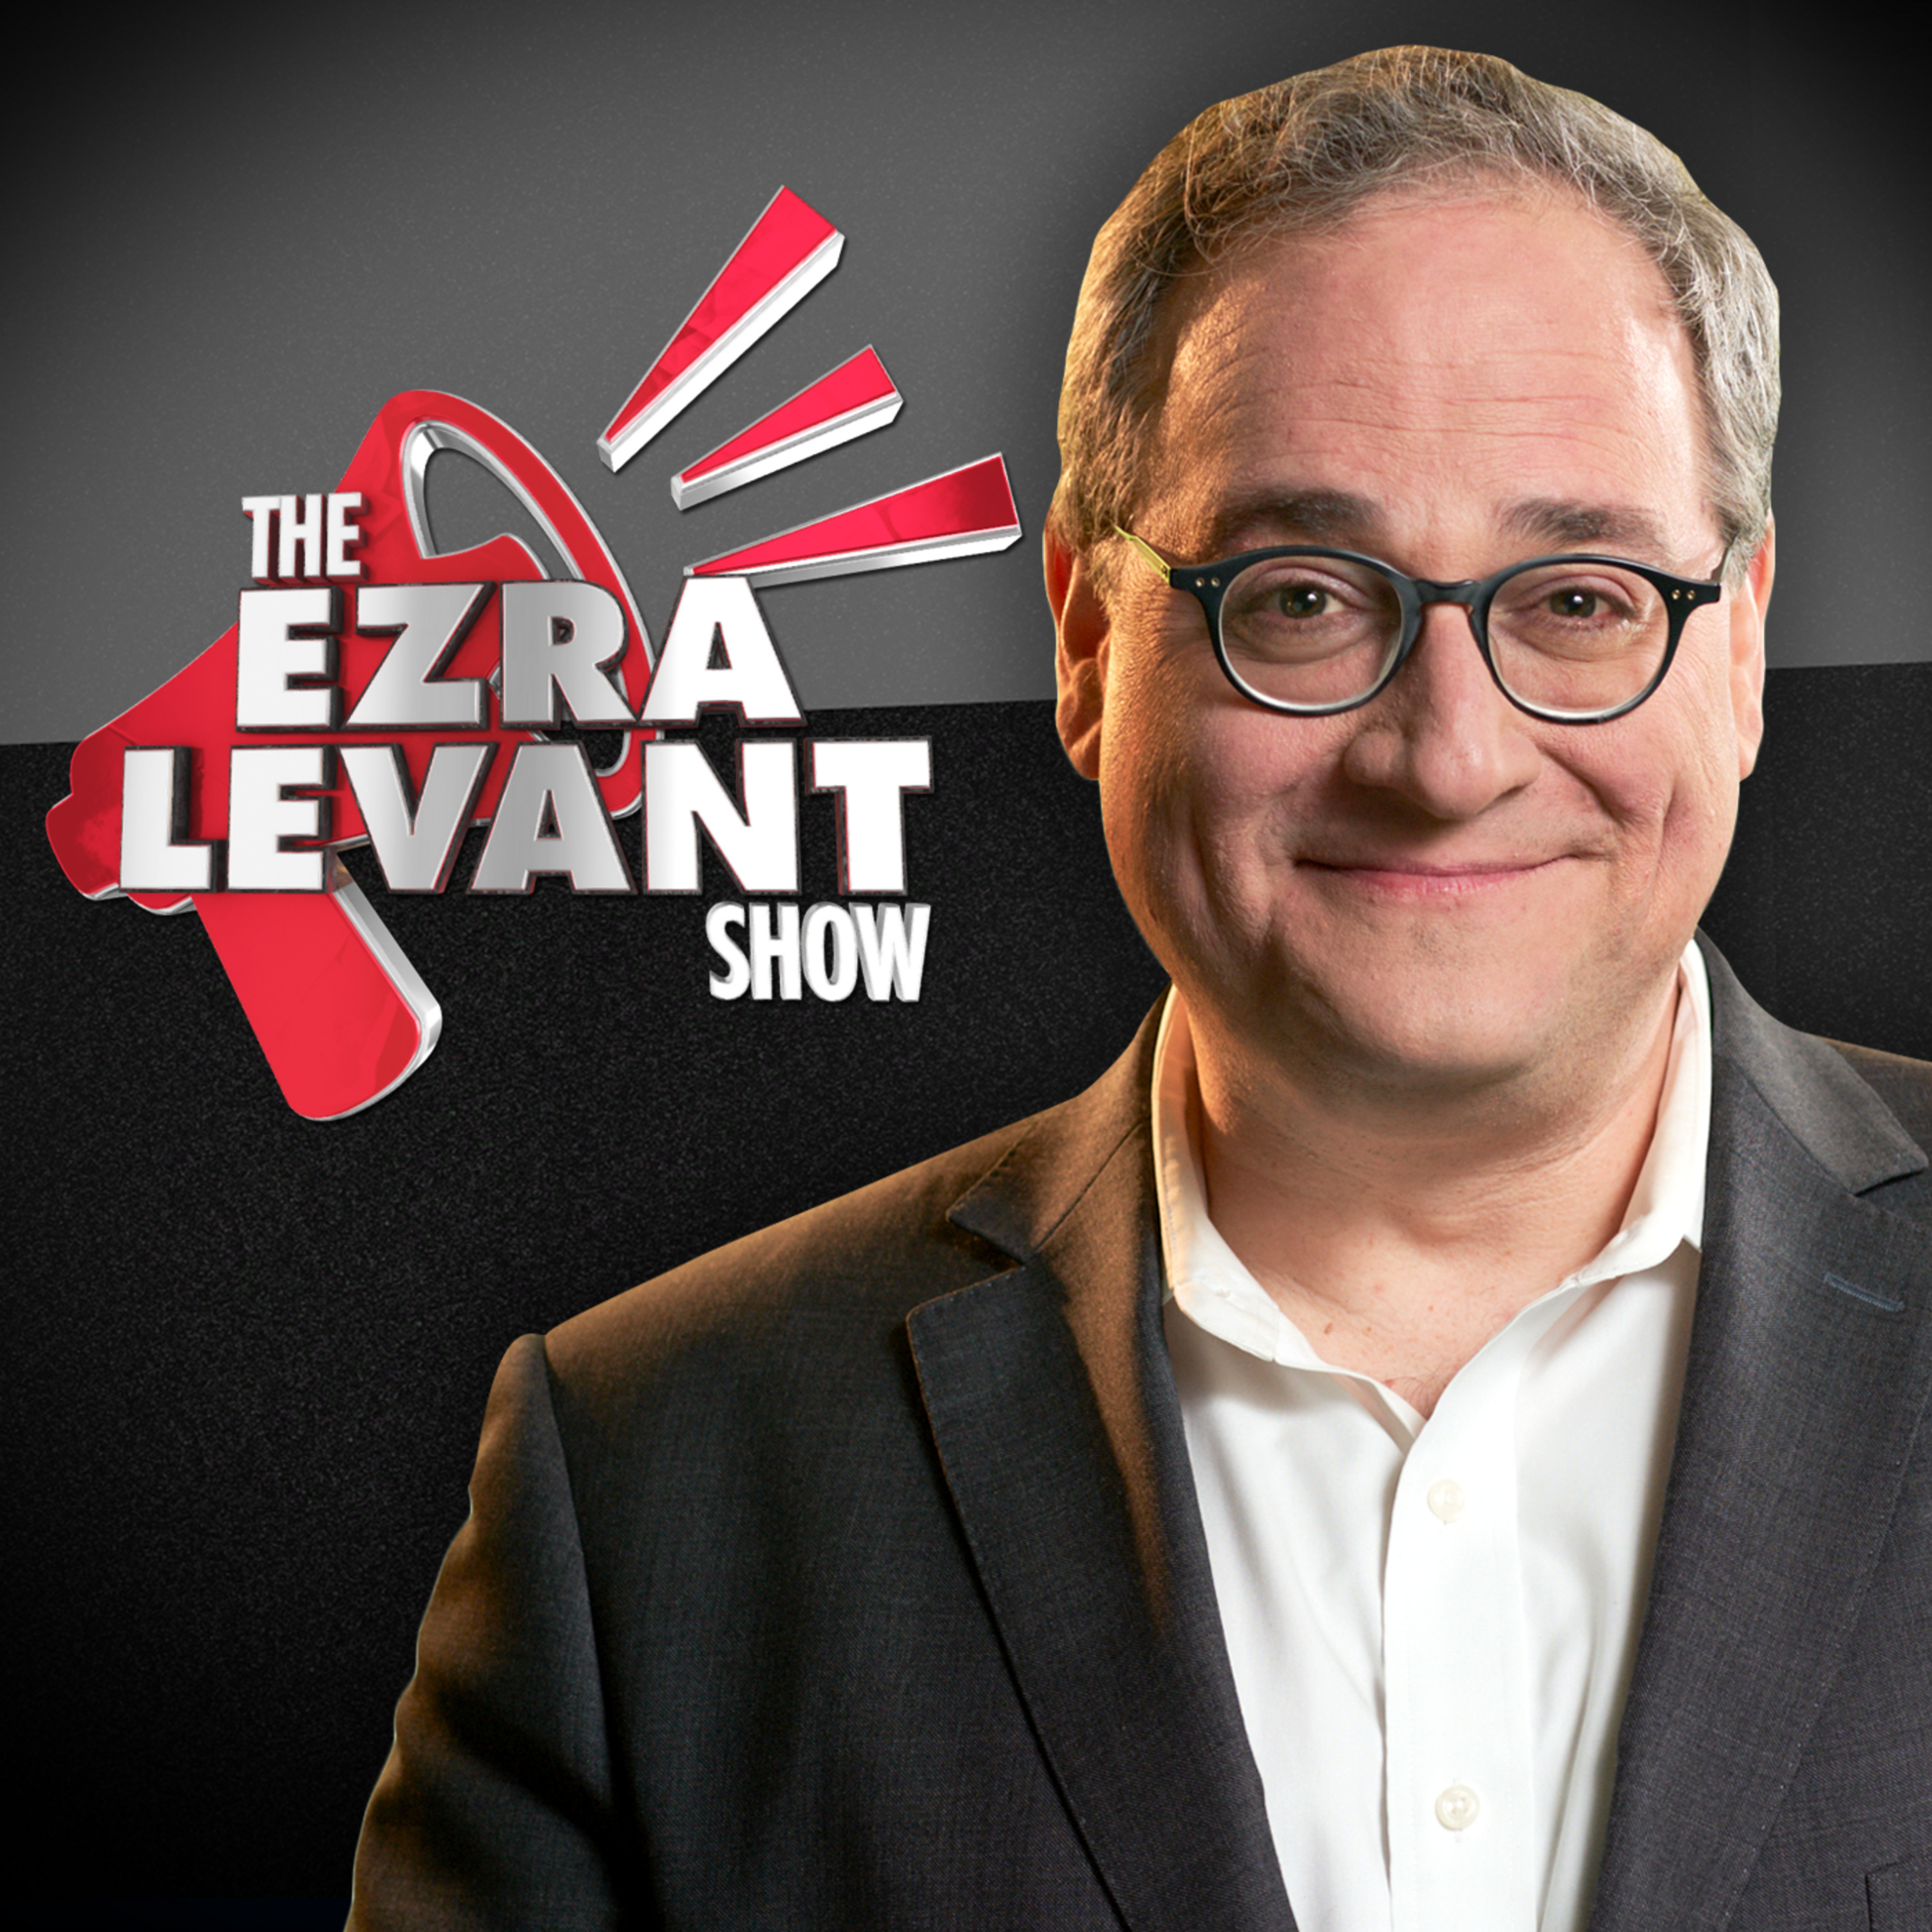 EZRA LEVANT | Trudeau’s bodyguards threaten reporters, again